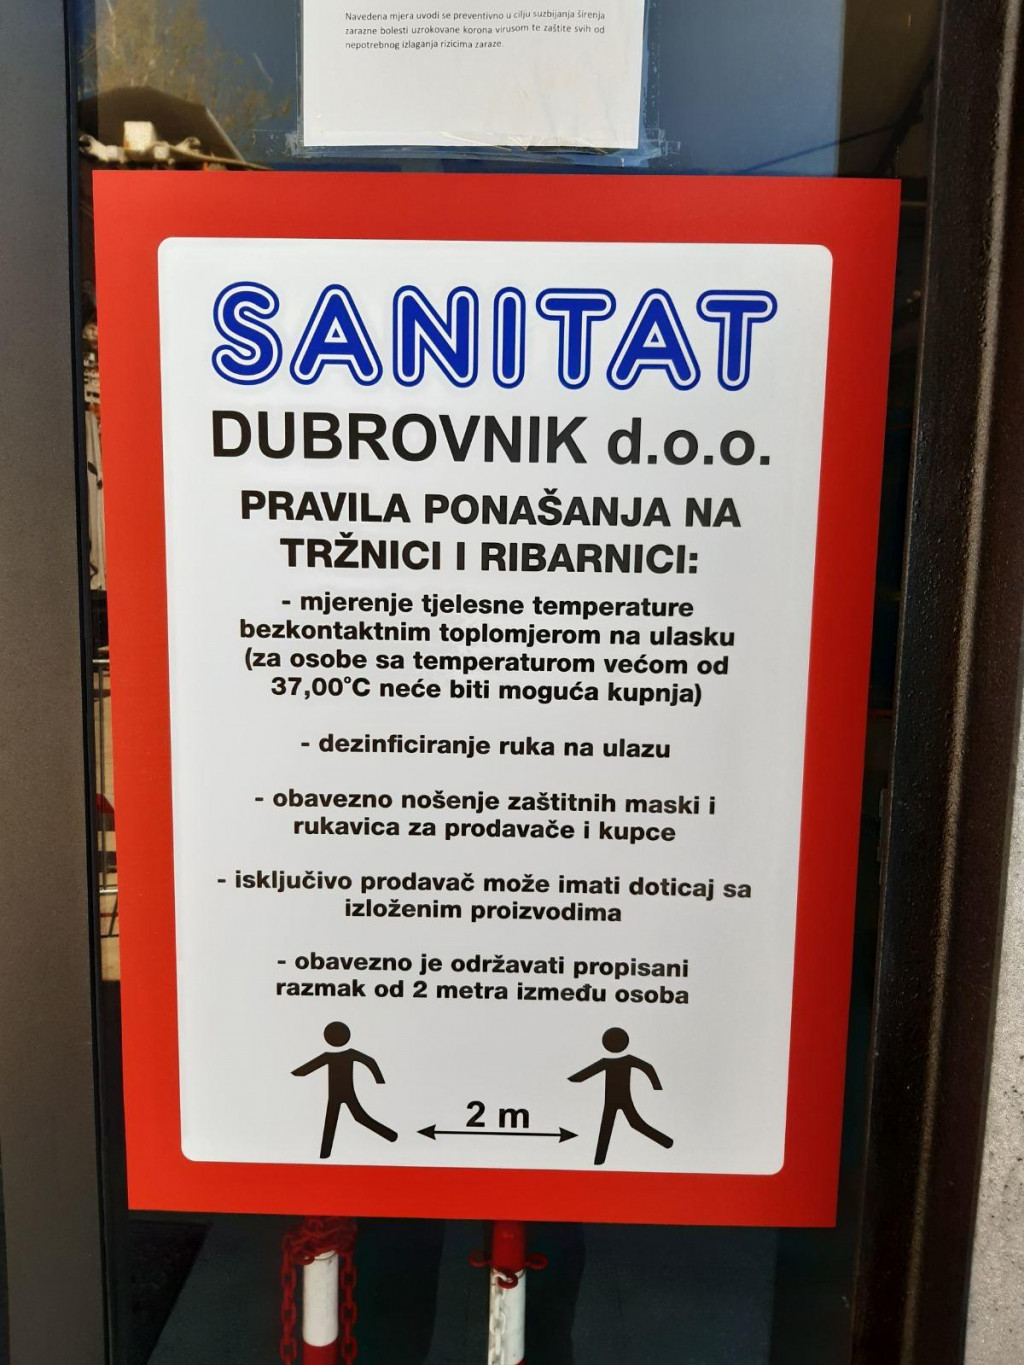 Sanitat postavio pravila ponašanja na tržnici i ribarnici u Gružu